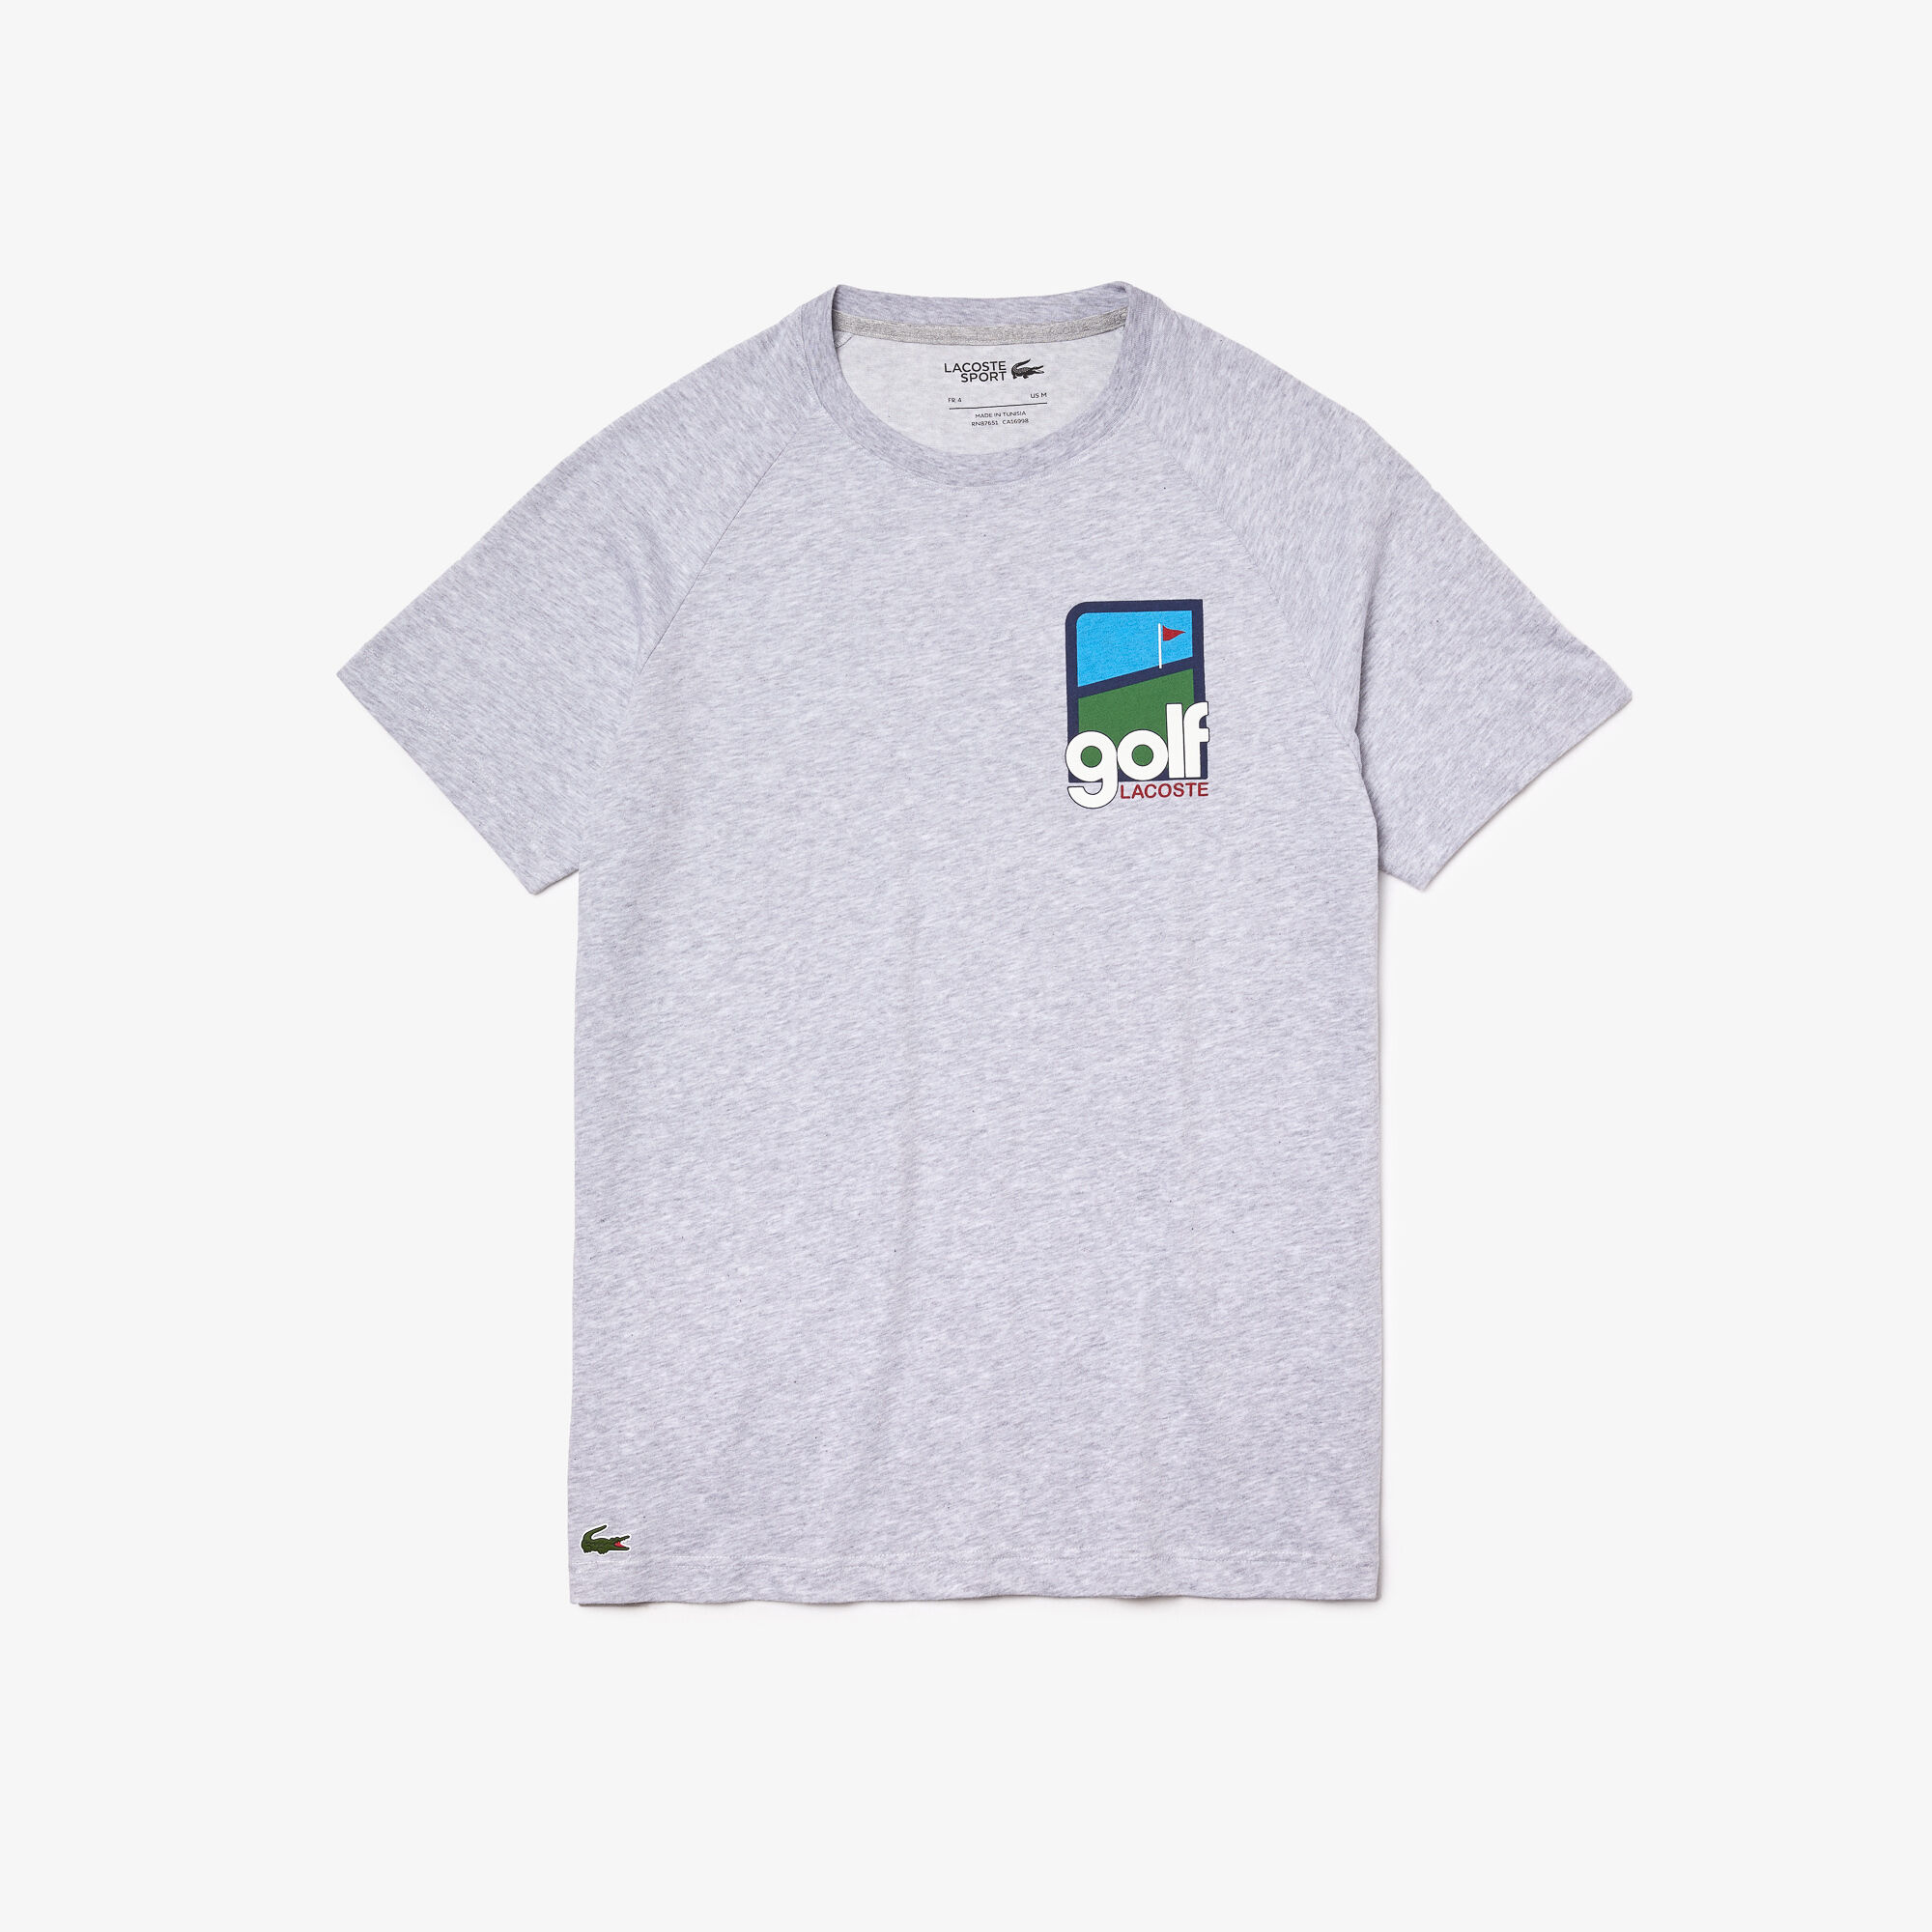 Men’s Lacoste SPORT 3D Design Breathable Cotton Golf T-shirt